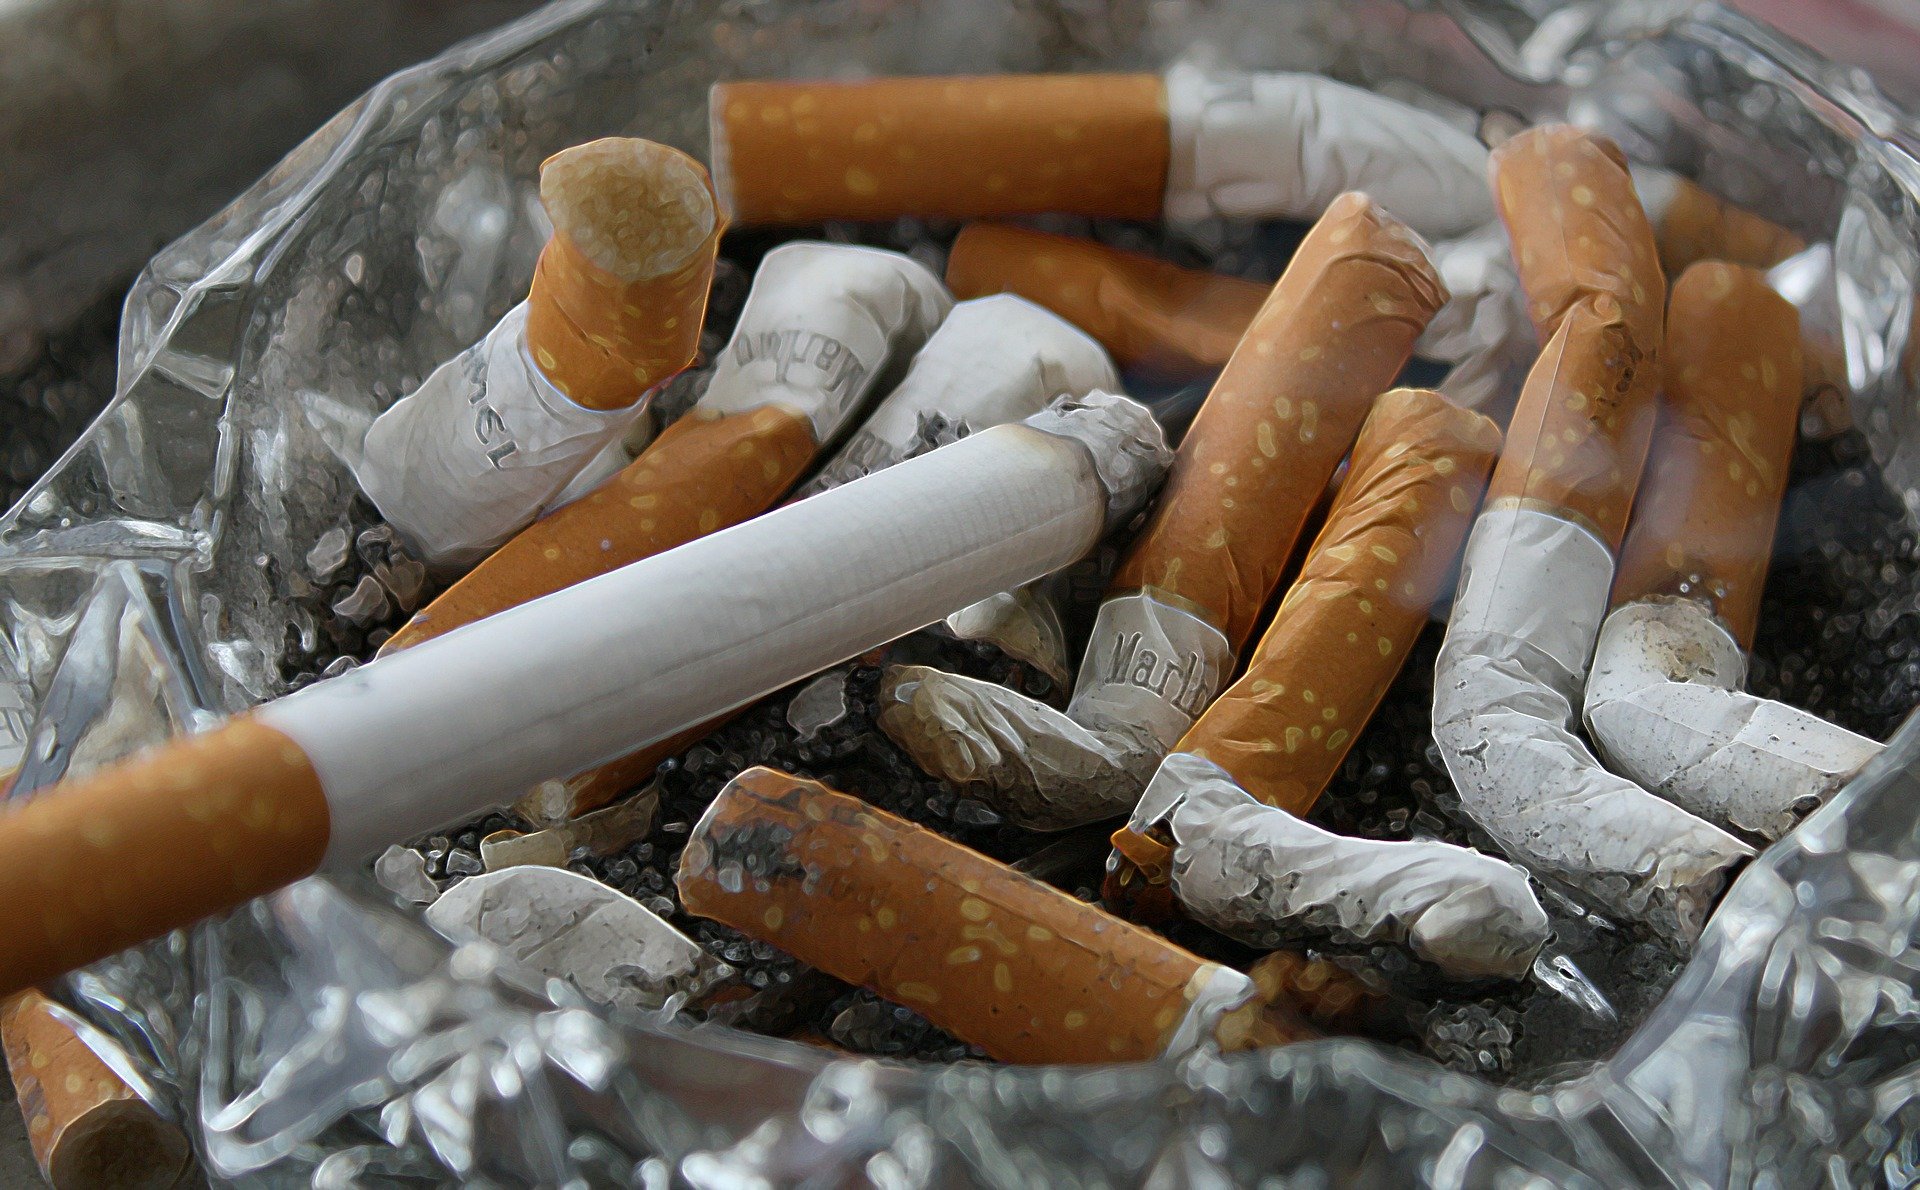 Tobacco - Szingapúr nyitott az új-zélandihoz hasonló dohányzásellenes törvények bevezetésére